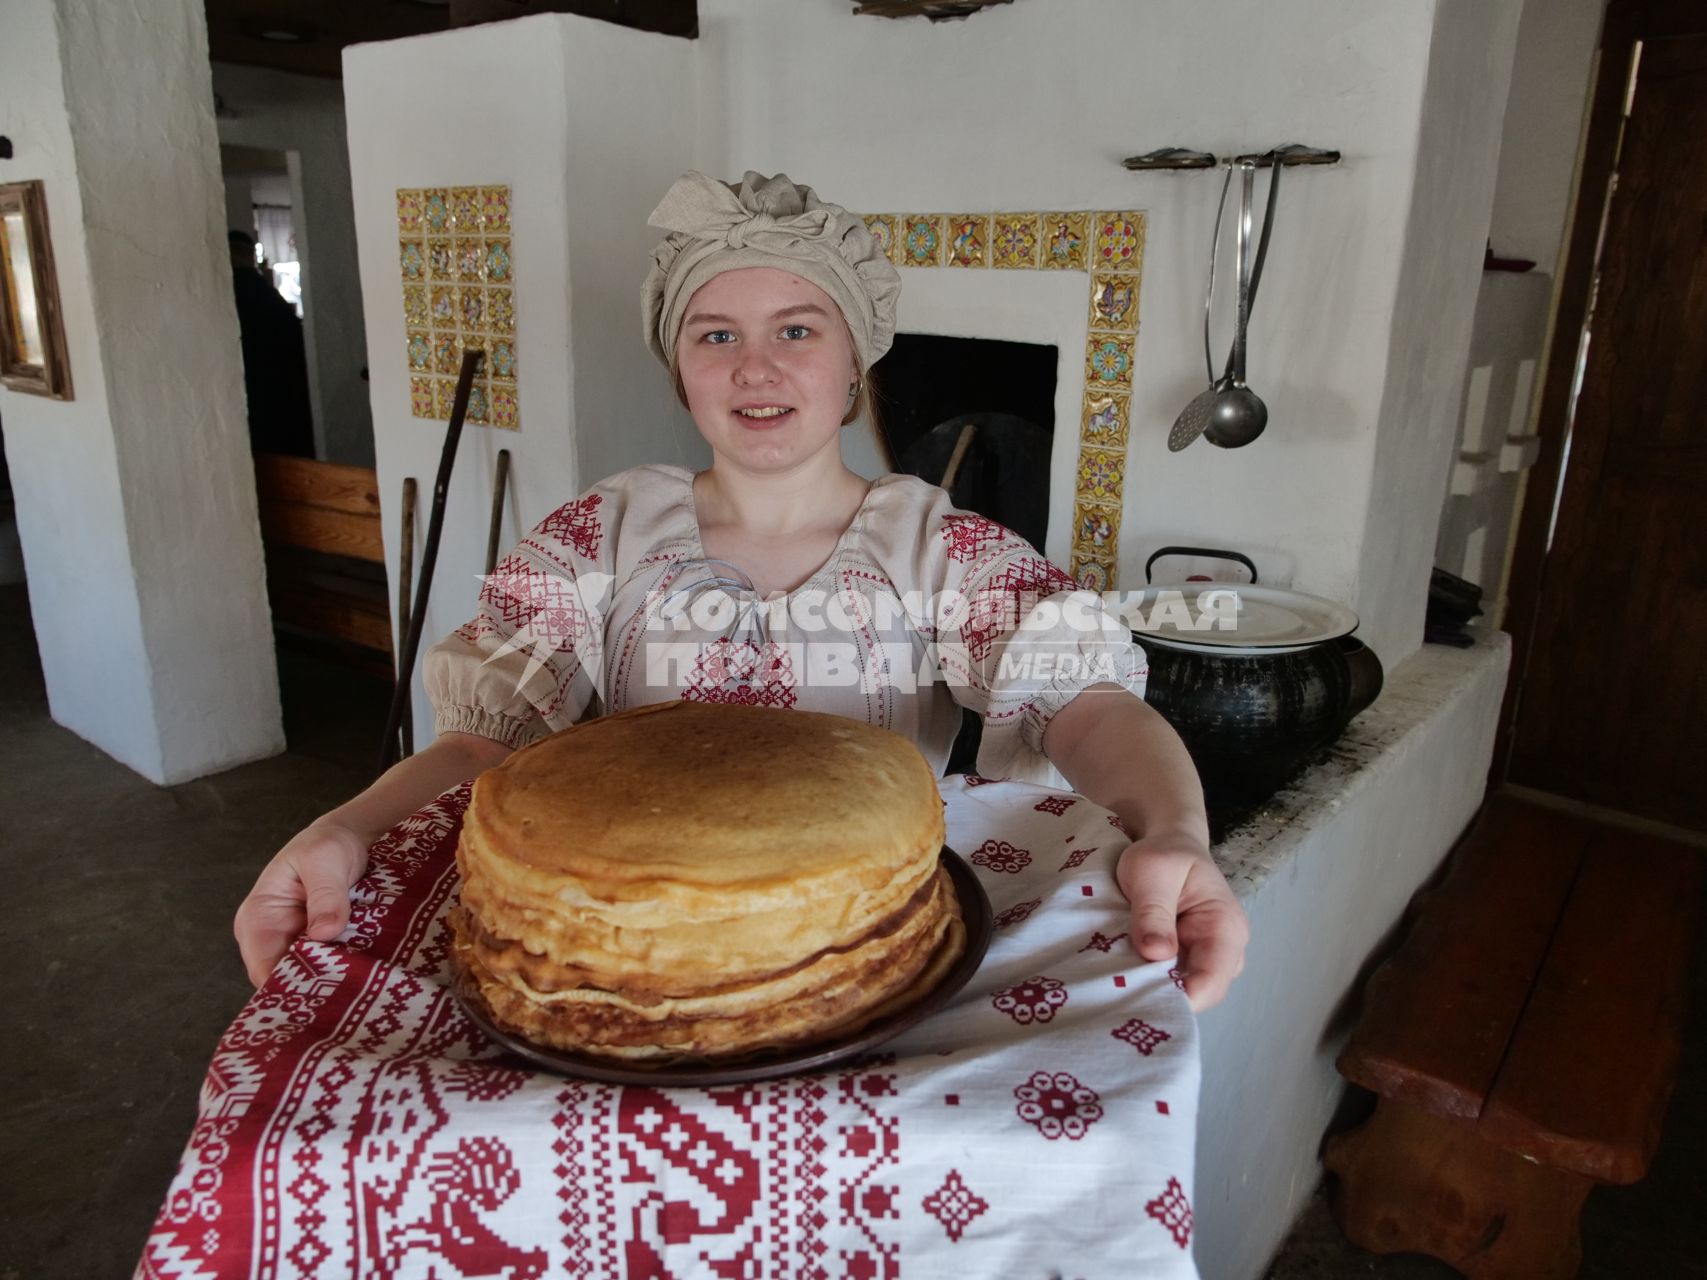 Ульяновск. Девушка в русском национальном костюме держит тарелку с блинами.